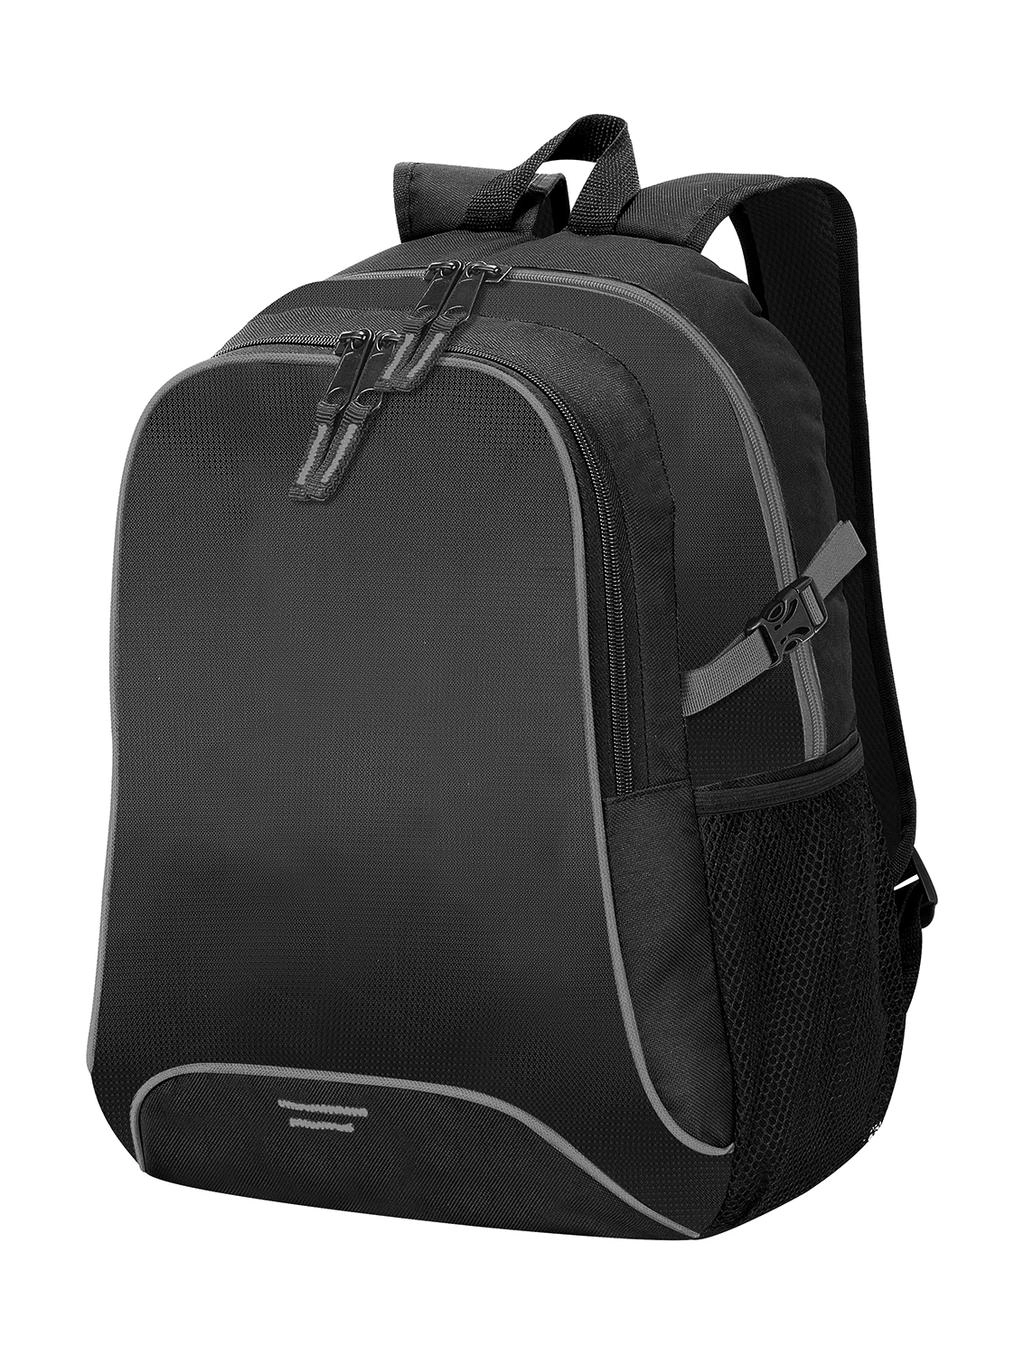 Osaka Basic Backpack zum Besticken und Bedrucken in der Farbe Black/Light Grey mit Ihren Logo, Schriftzug oder Motiv.